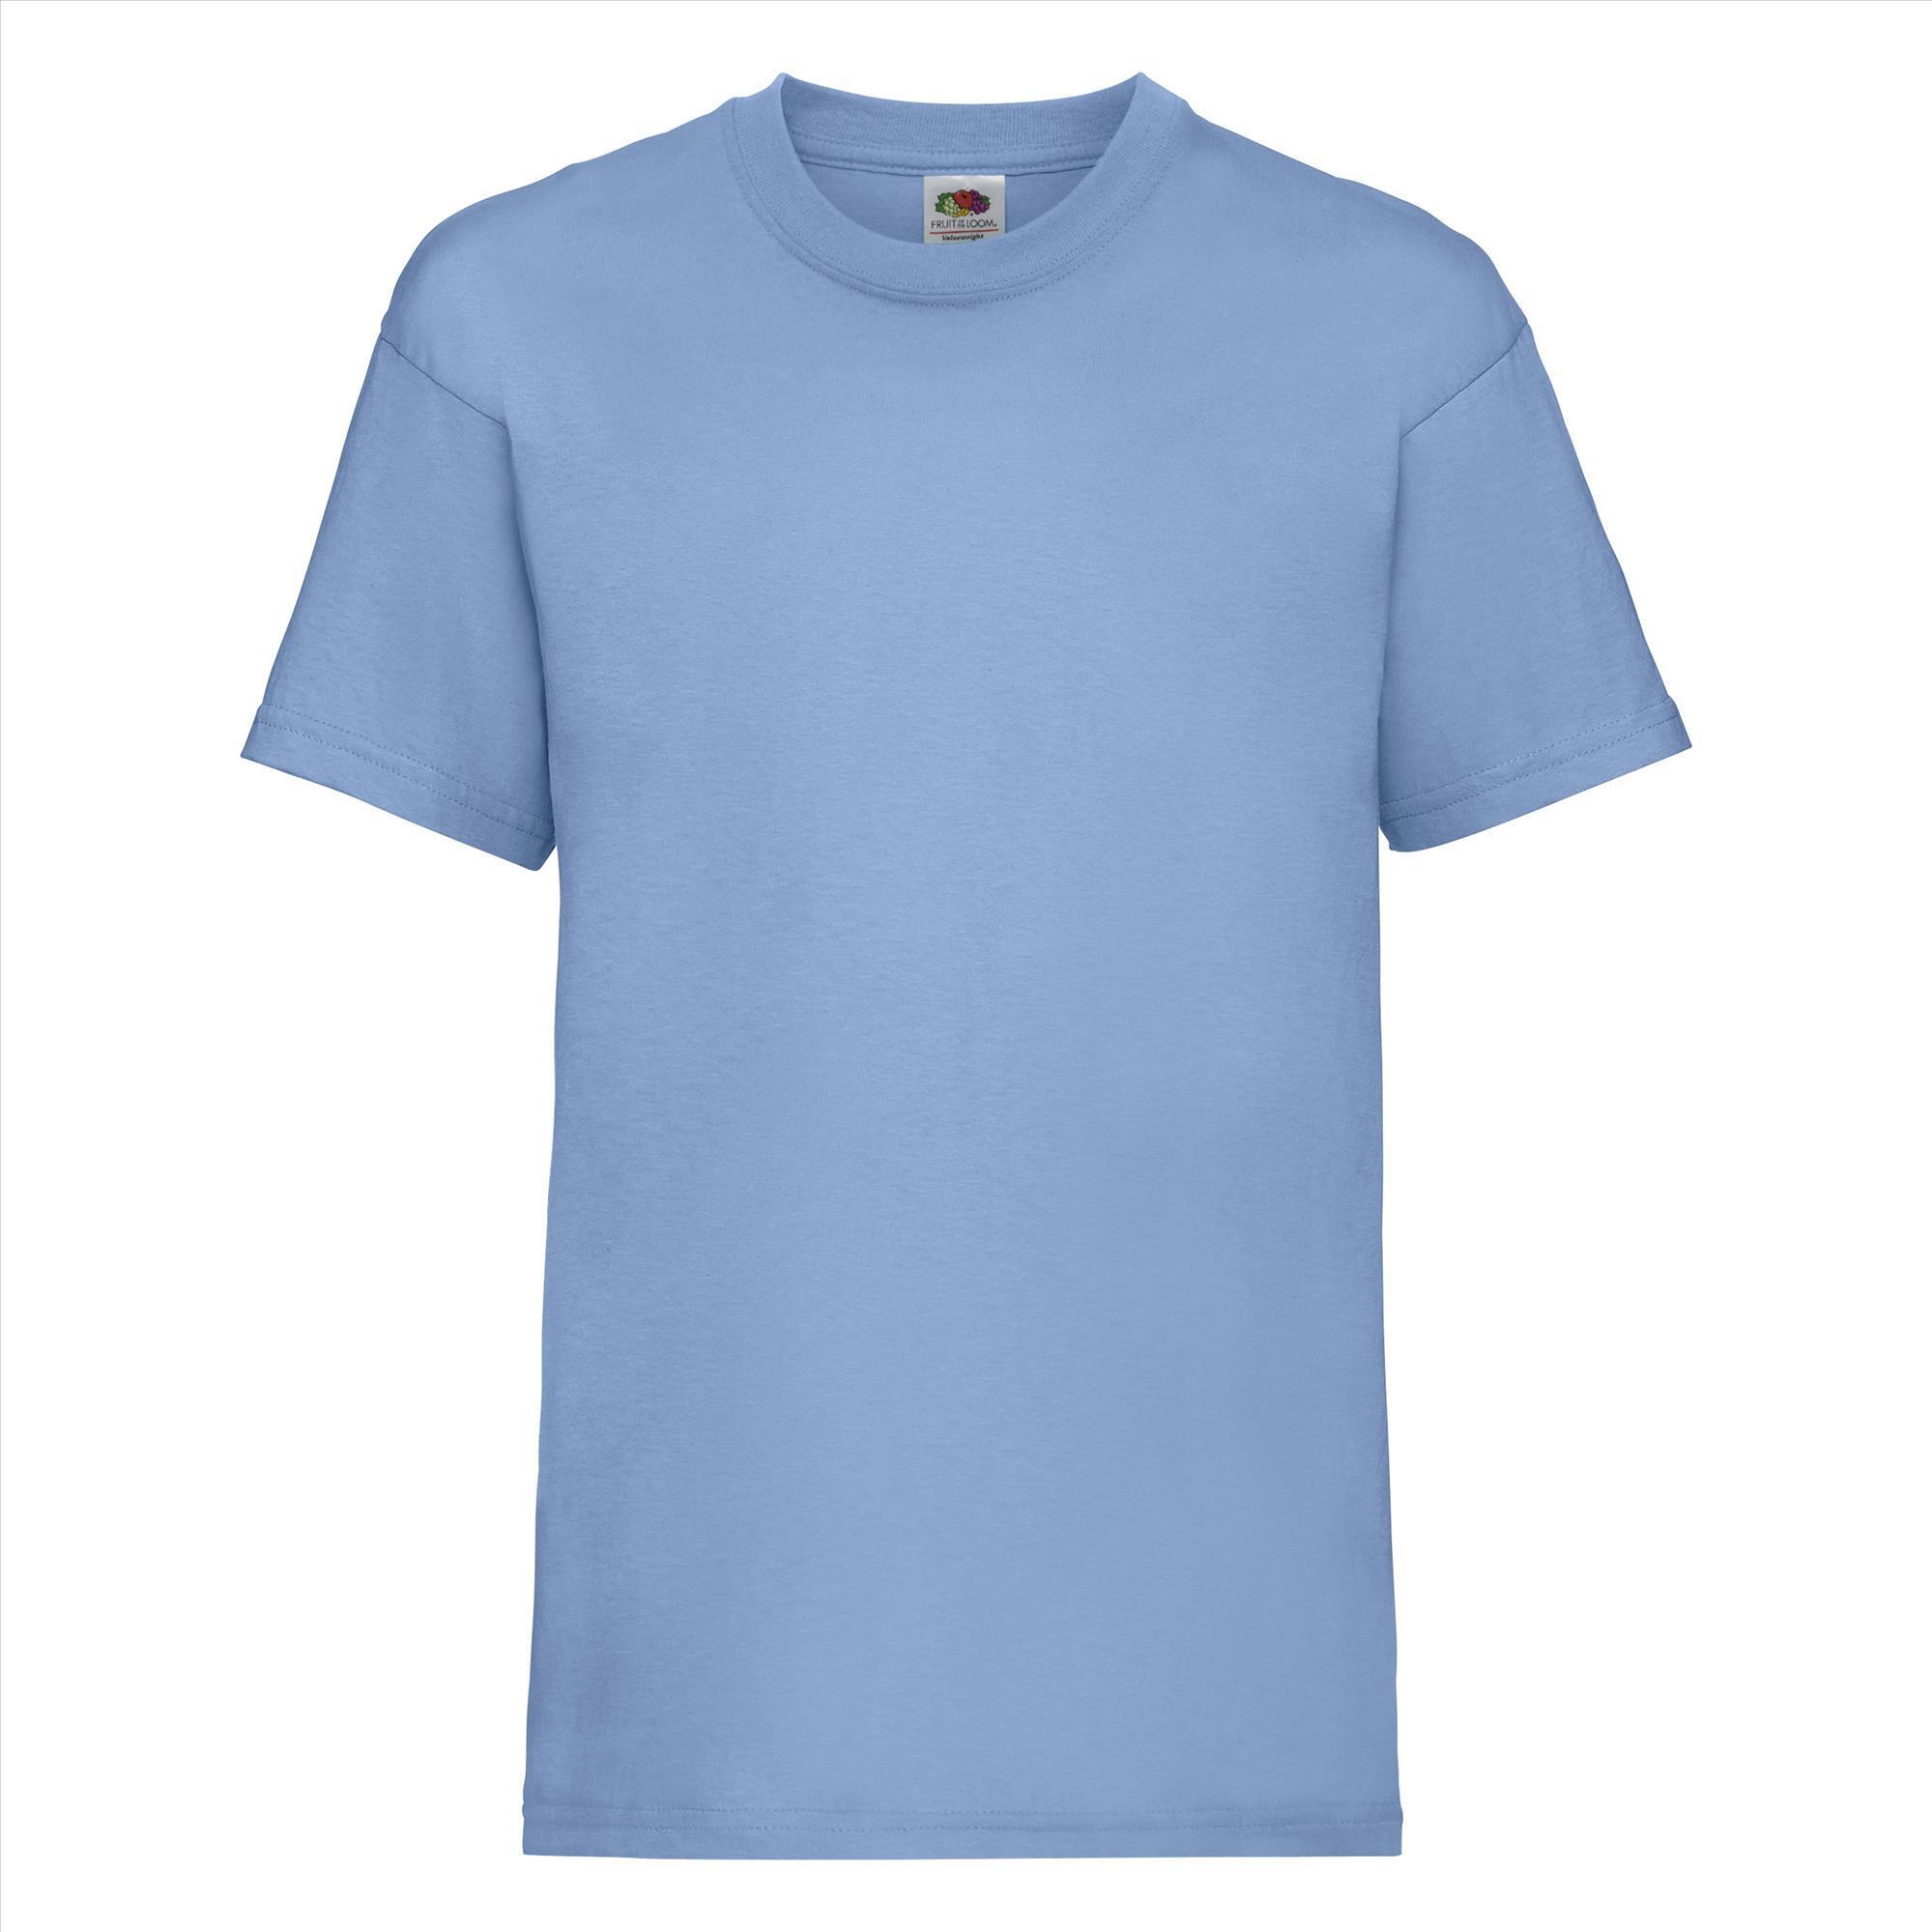 Gepersonaliseerde Kinder T-shirt hemelsblauw Kinderkleding bedrukken